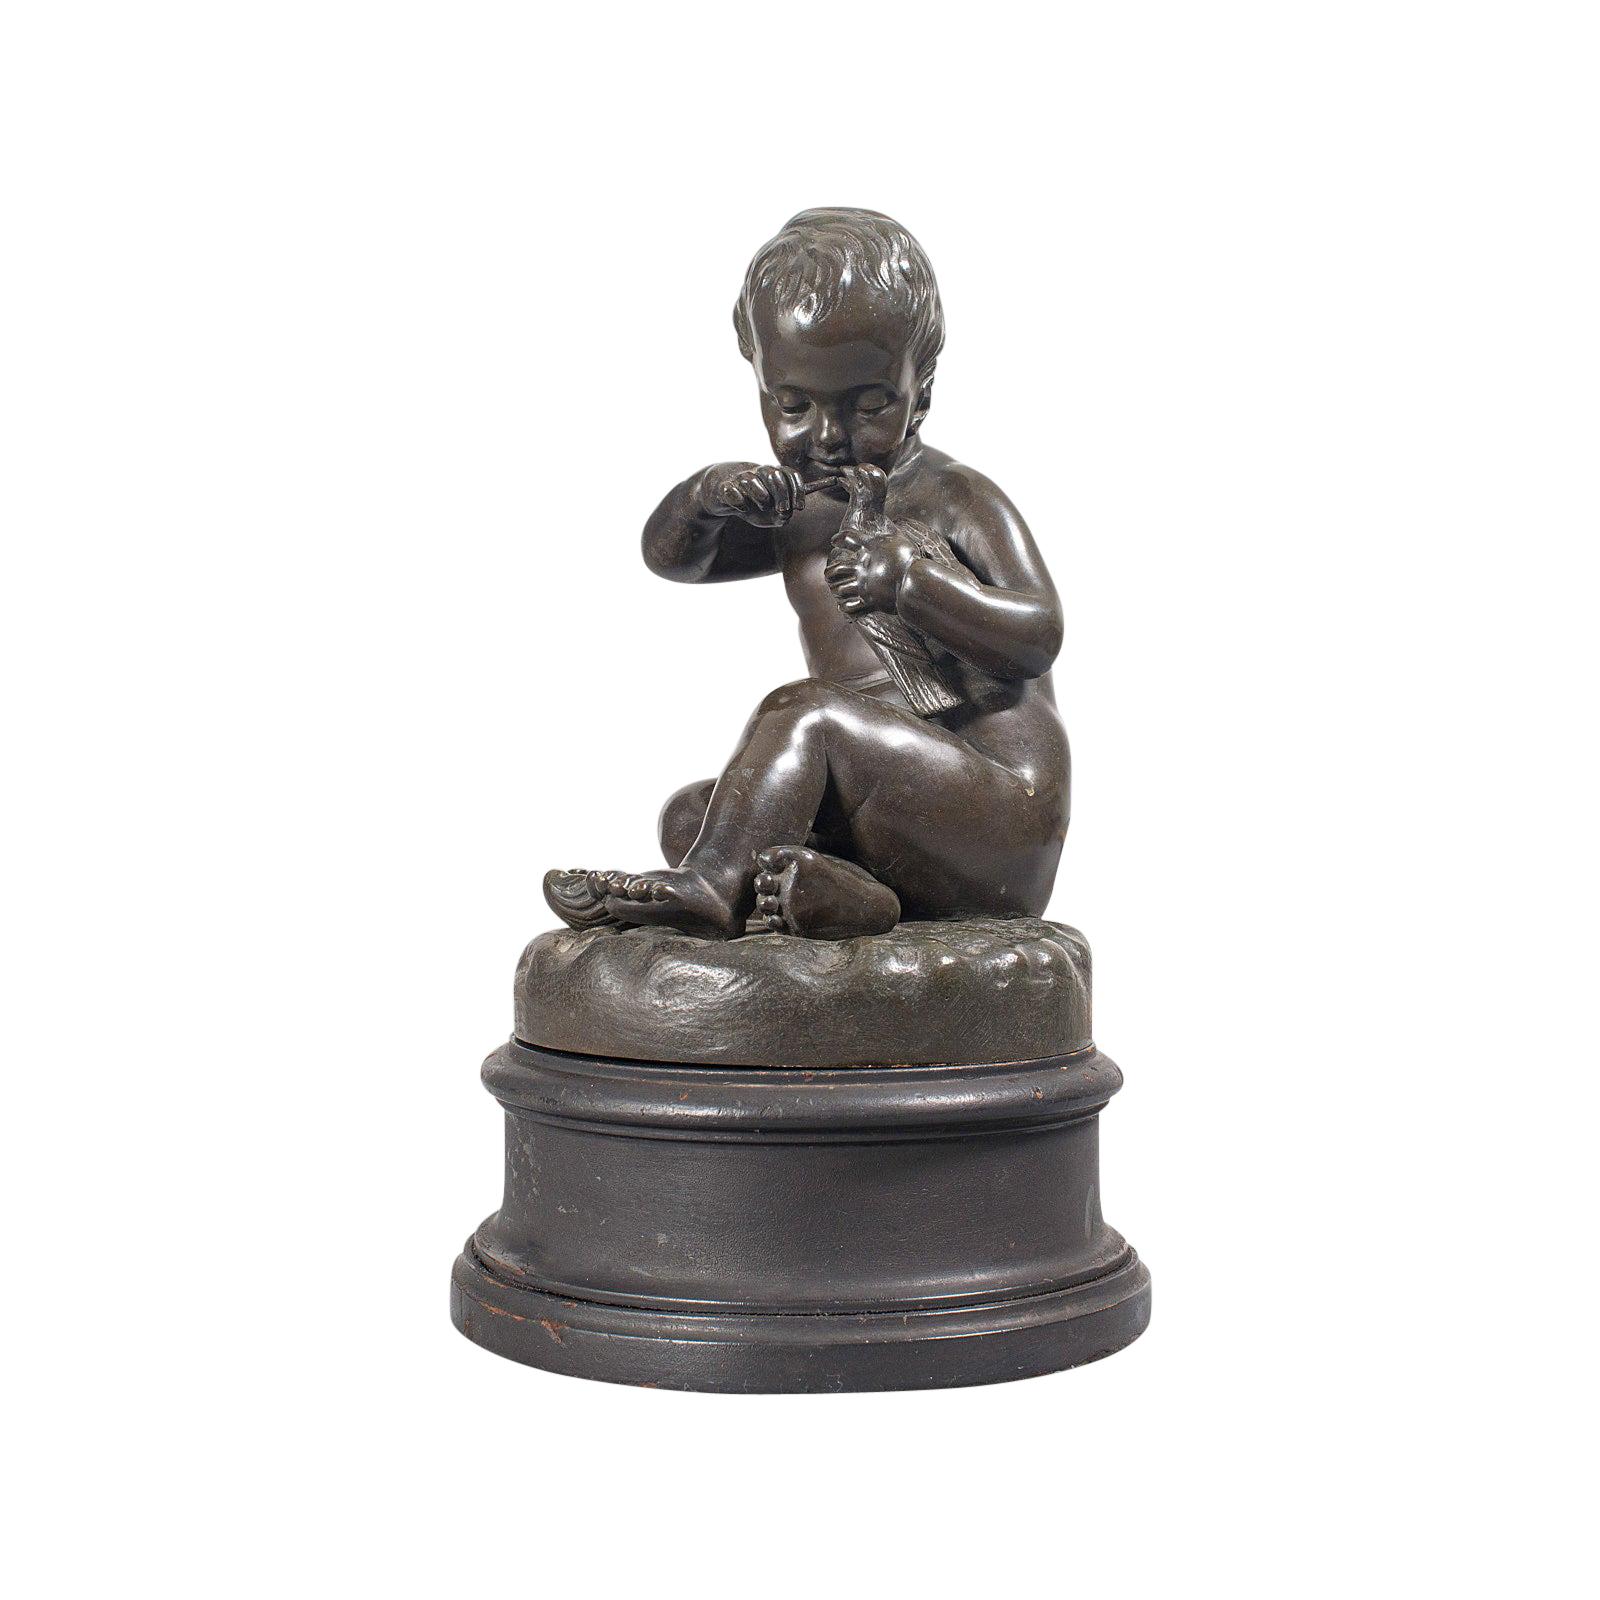 Antique Putto Statue, French, Bronze, Cherub Figure, Late 19th Century